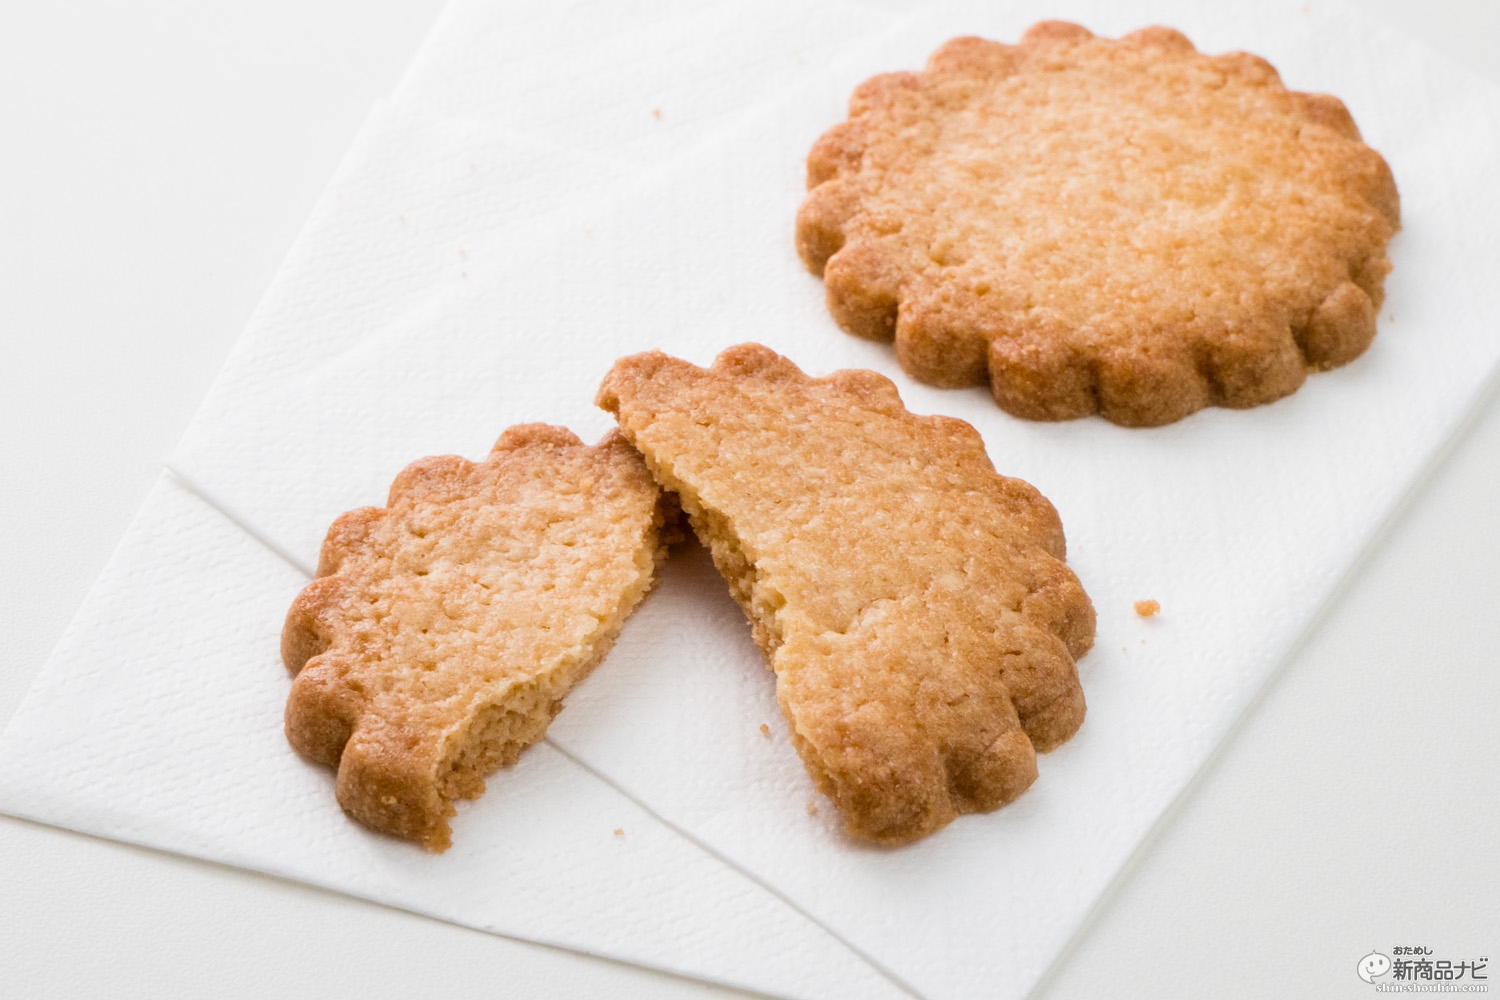 おためし新商品ナビ Blog Archive おフランス土産の定番 モンサンミッシェルガレットクッキー をコンビニで発見 トドメのオレンジはちみつに衝撃が走った